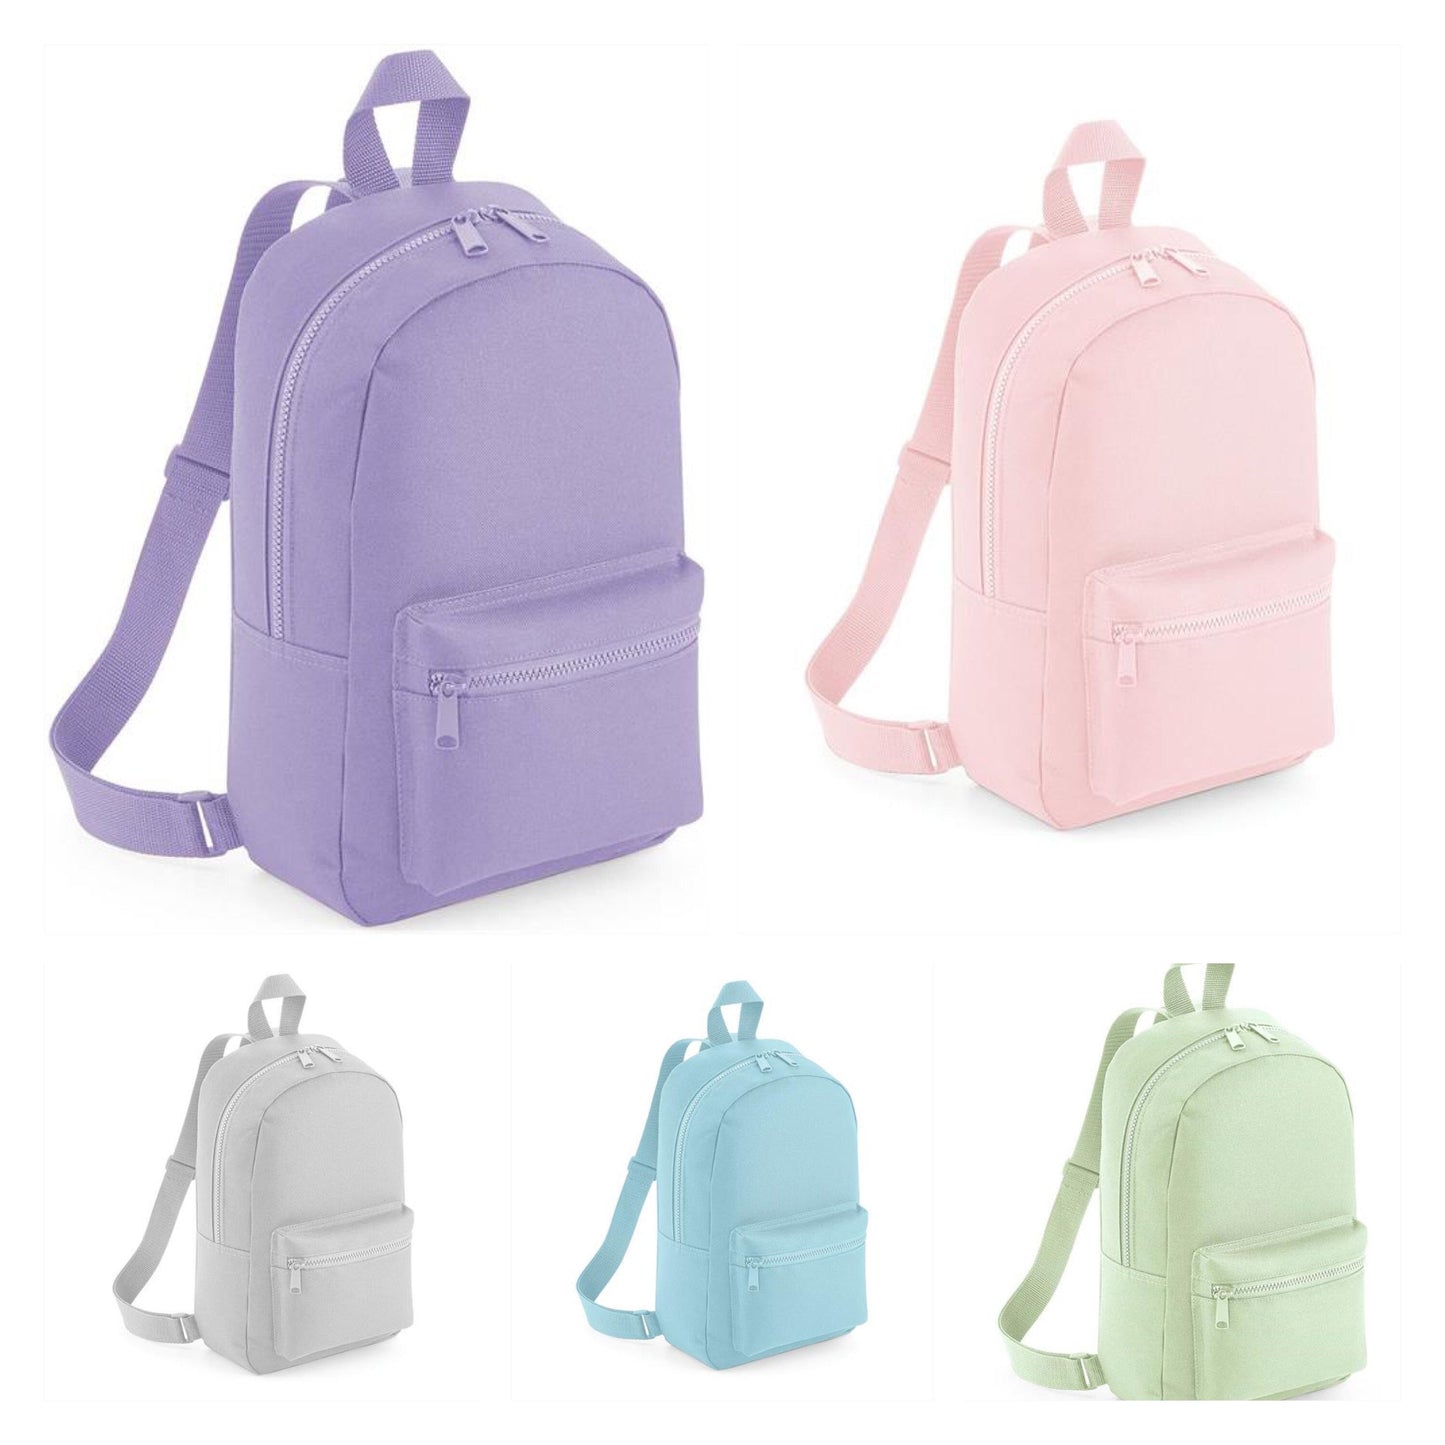 BALLERINA TODDLER BACKPACK, Embroidered Personalized Backpack , Back to School Bag, Mama Bag, Name Bag, Nursery Bag , Kids Bag, Dance Bag